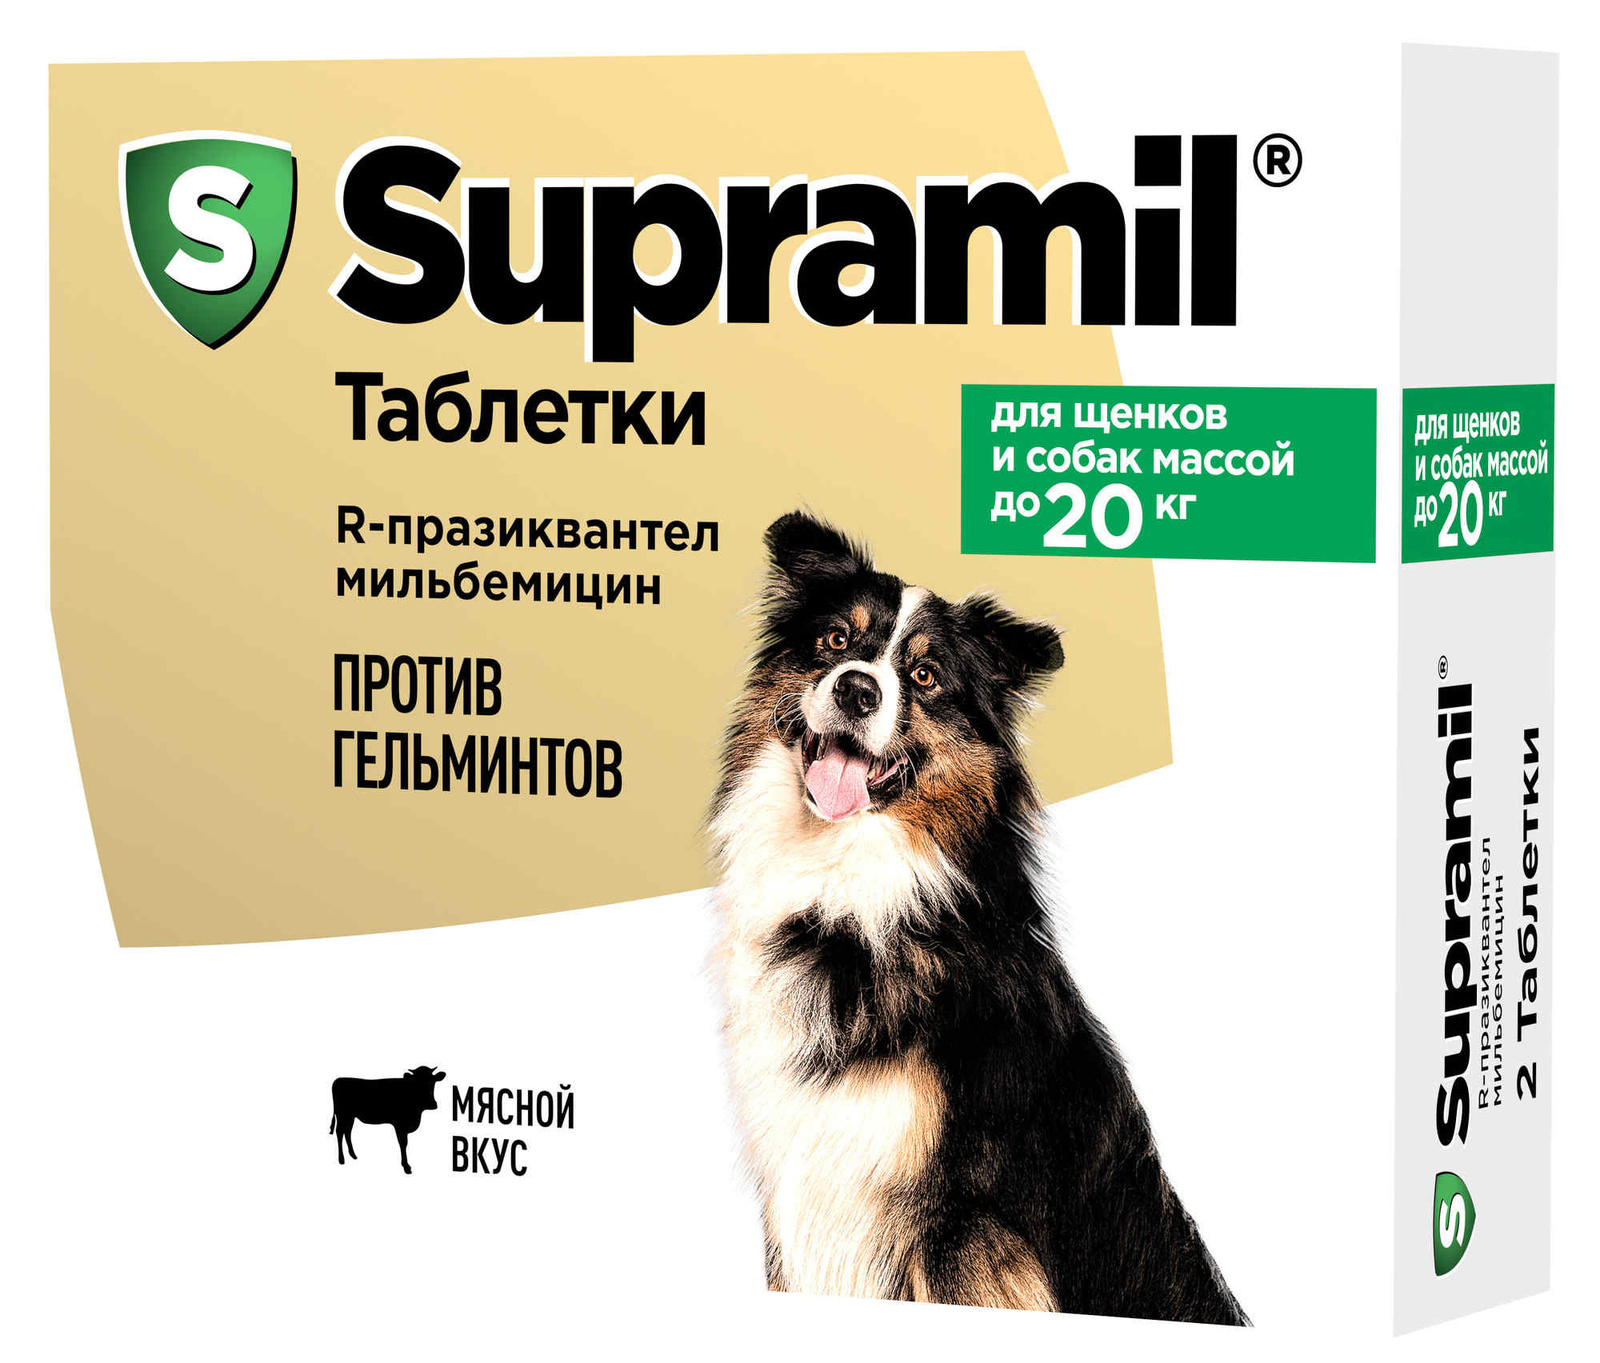 Астрафарм антигельминтный препарат Supramil для щенков и собак массой до 20 кг, таблетки (2 таб.)